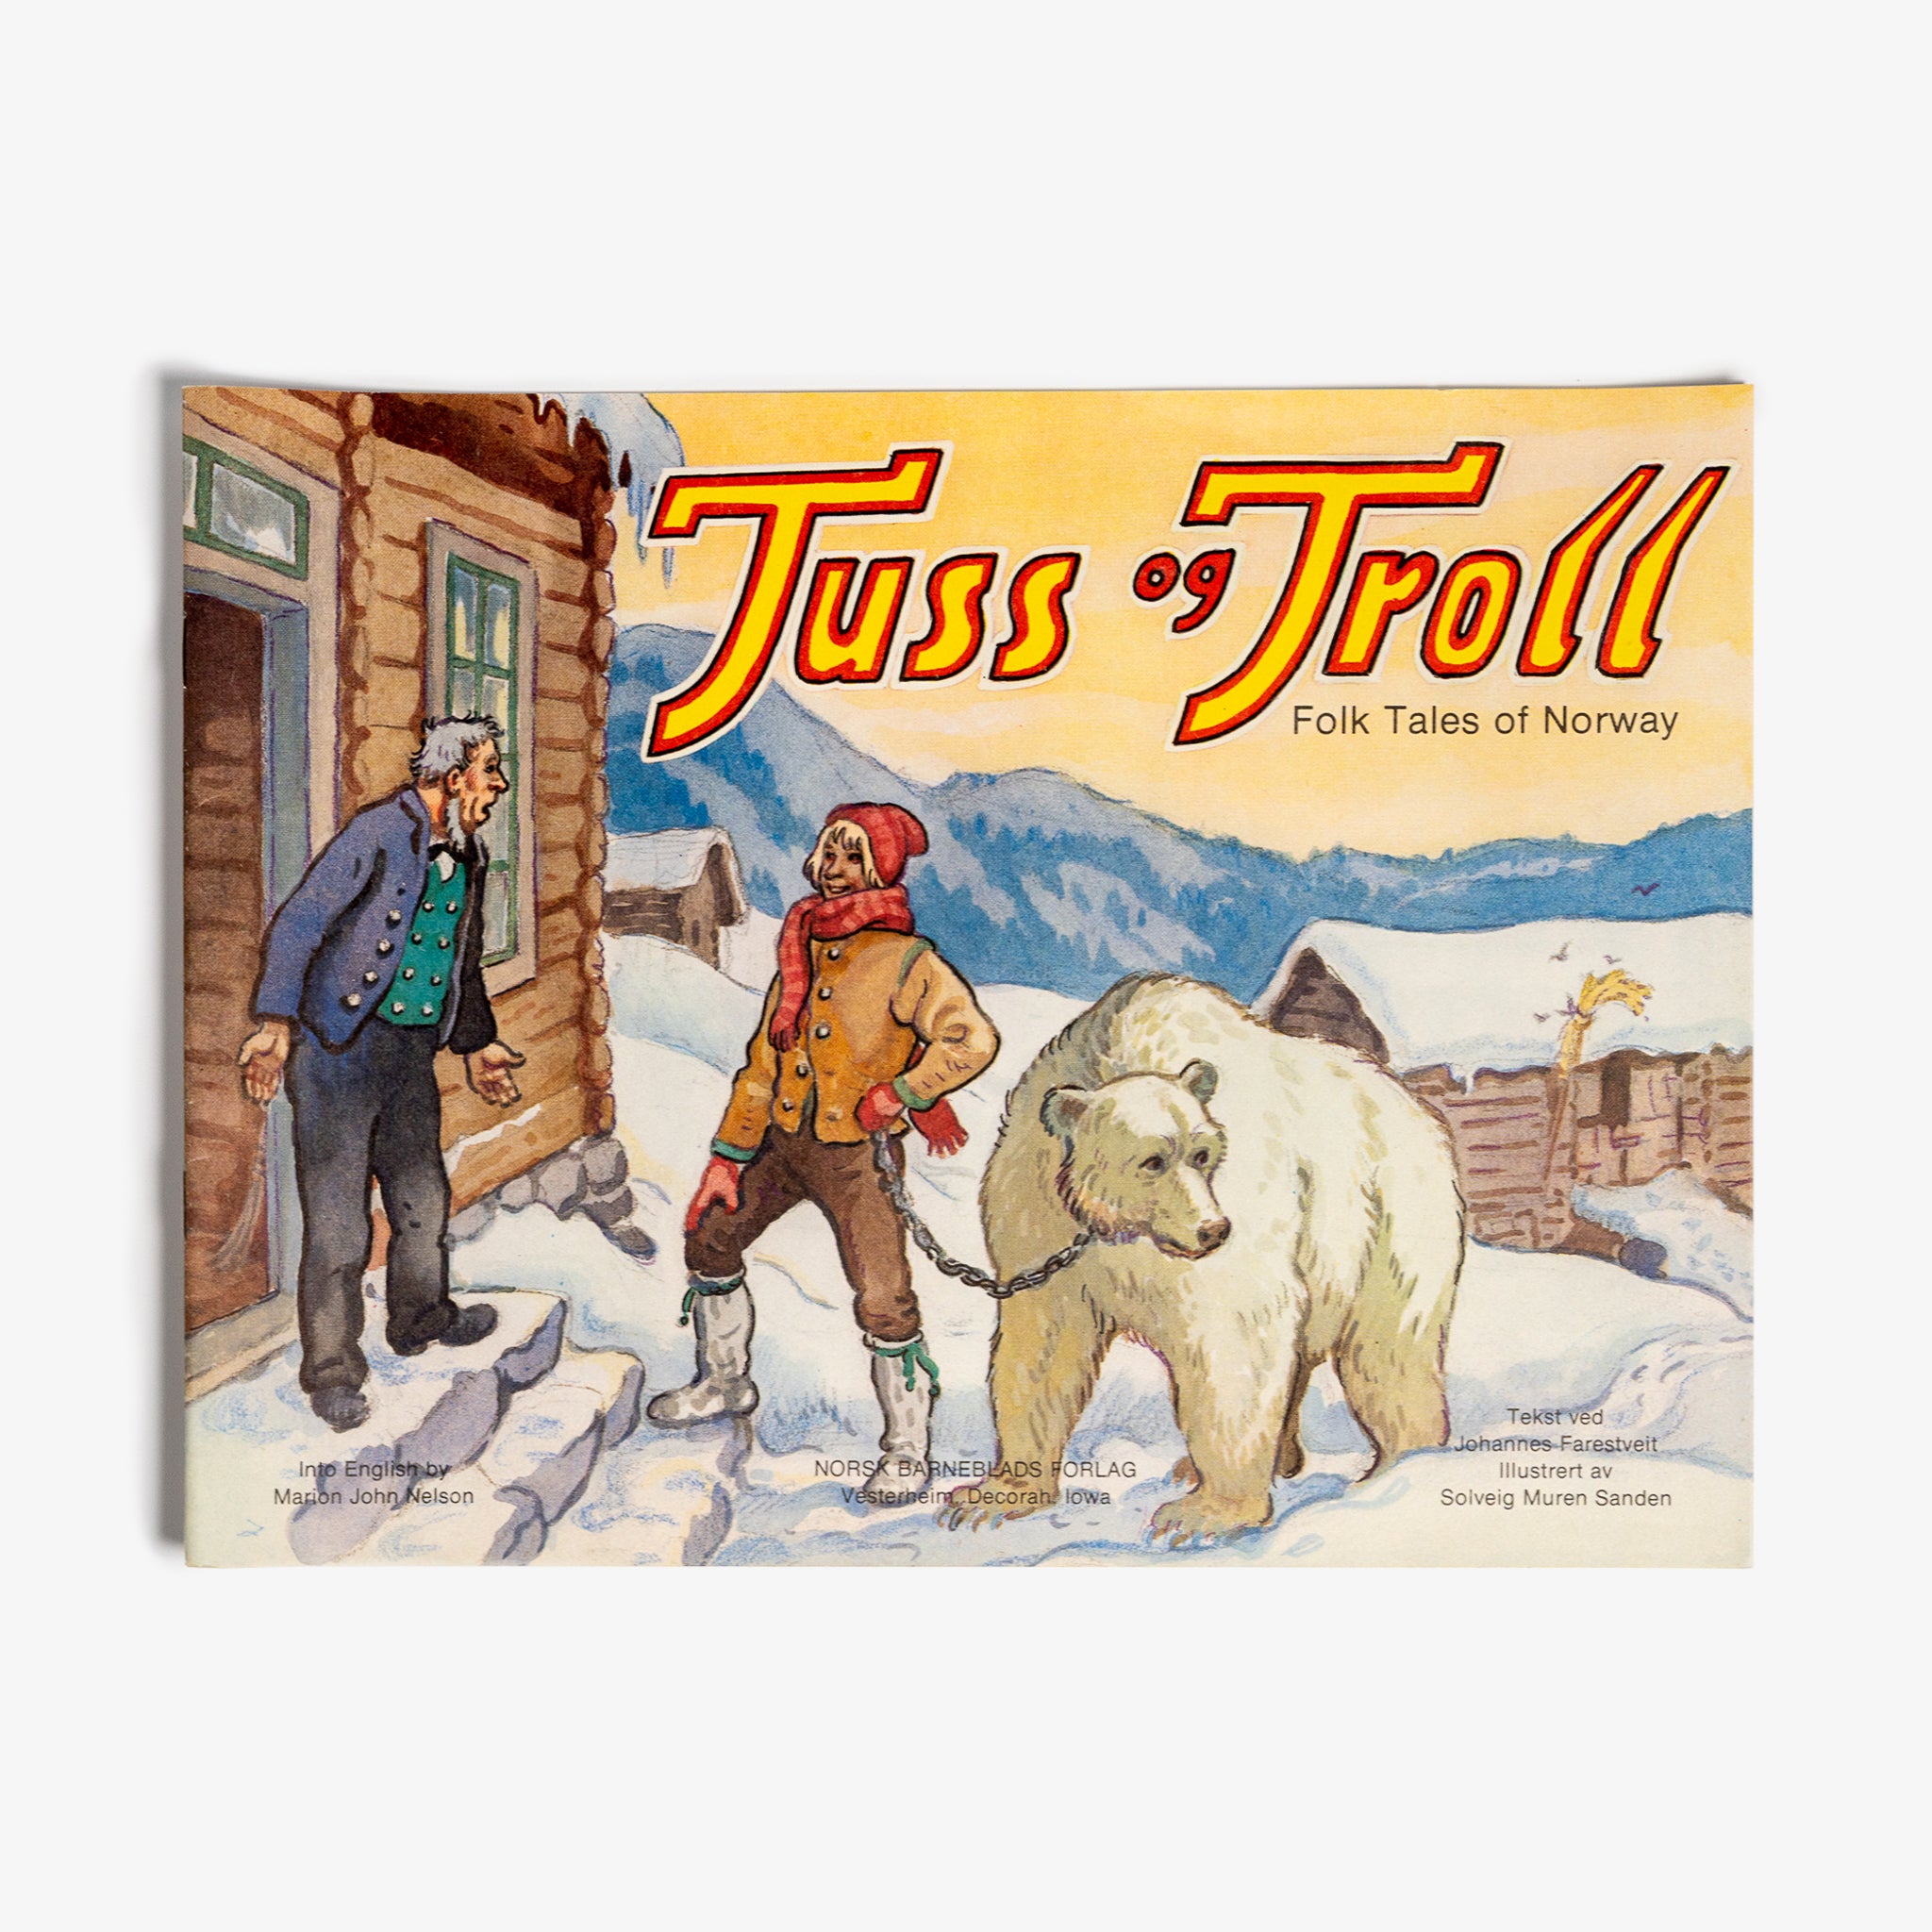 Tuss 'n Troll Folk Tales of Norway by Johannes Farstveit